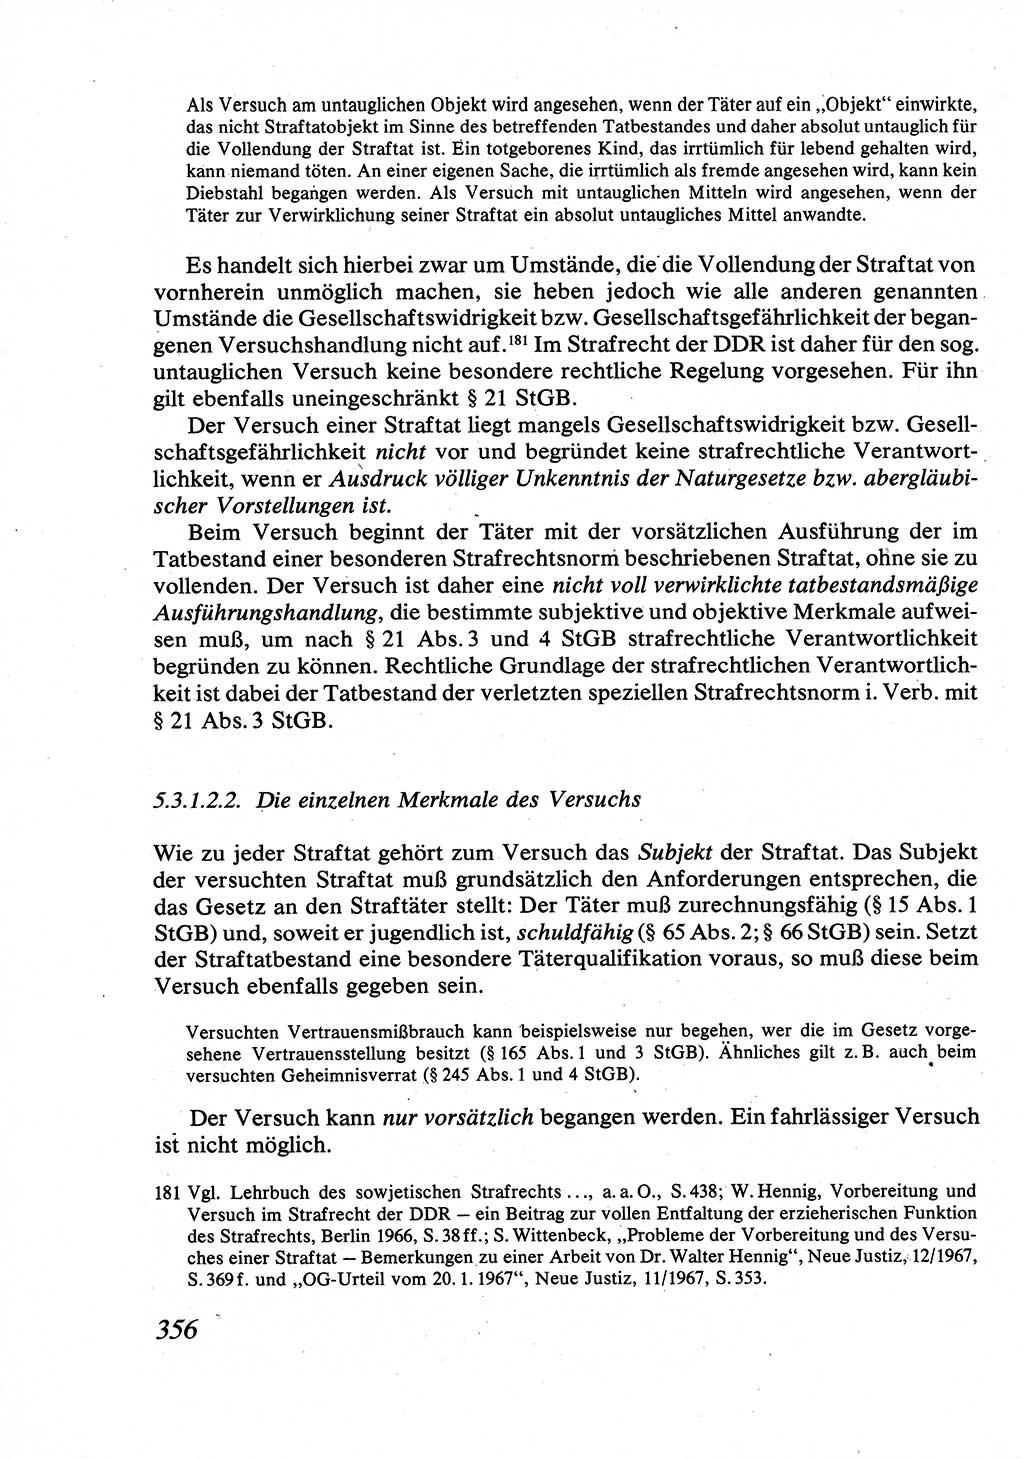 Strafrecht [Deutsche Demokratische Republik (DDR)], Allgemeiner Teil, Lehrbuch 1976, Seite 356 (Strafr. DDR AT Lb. 1976, S. 356)